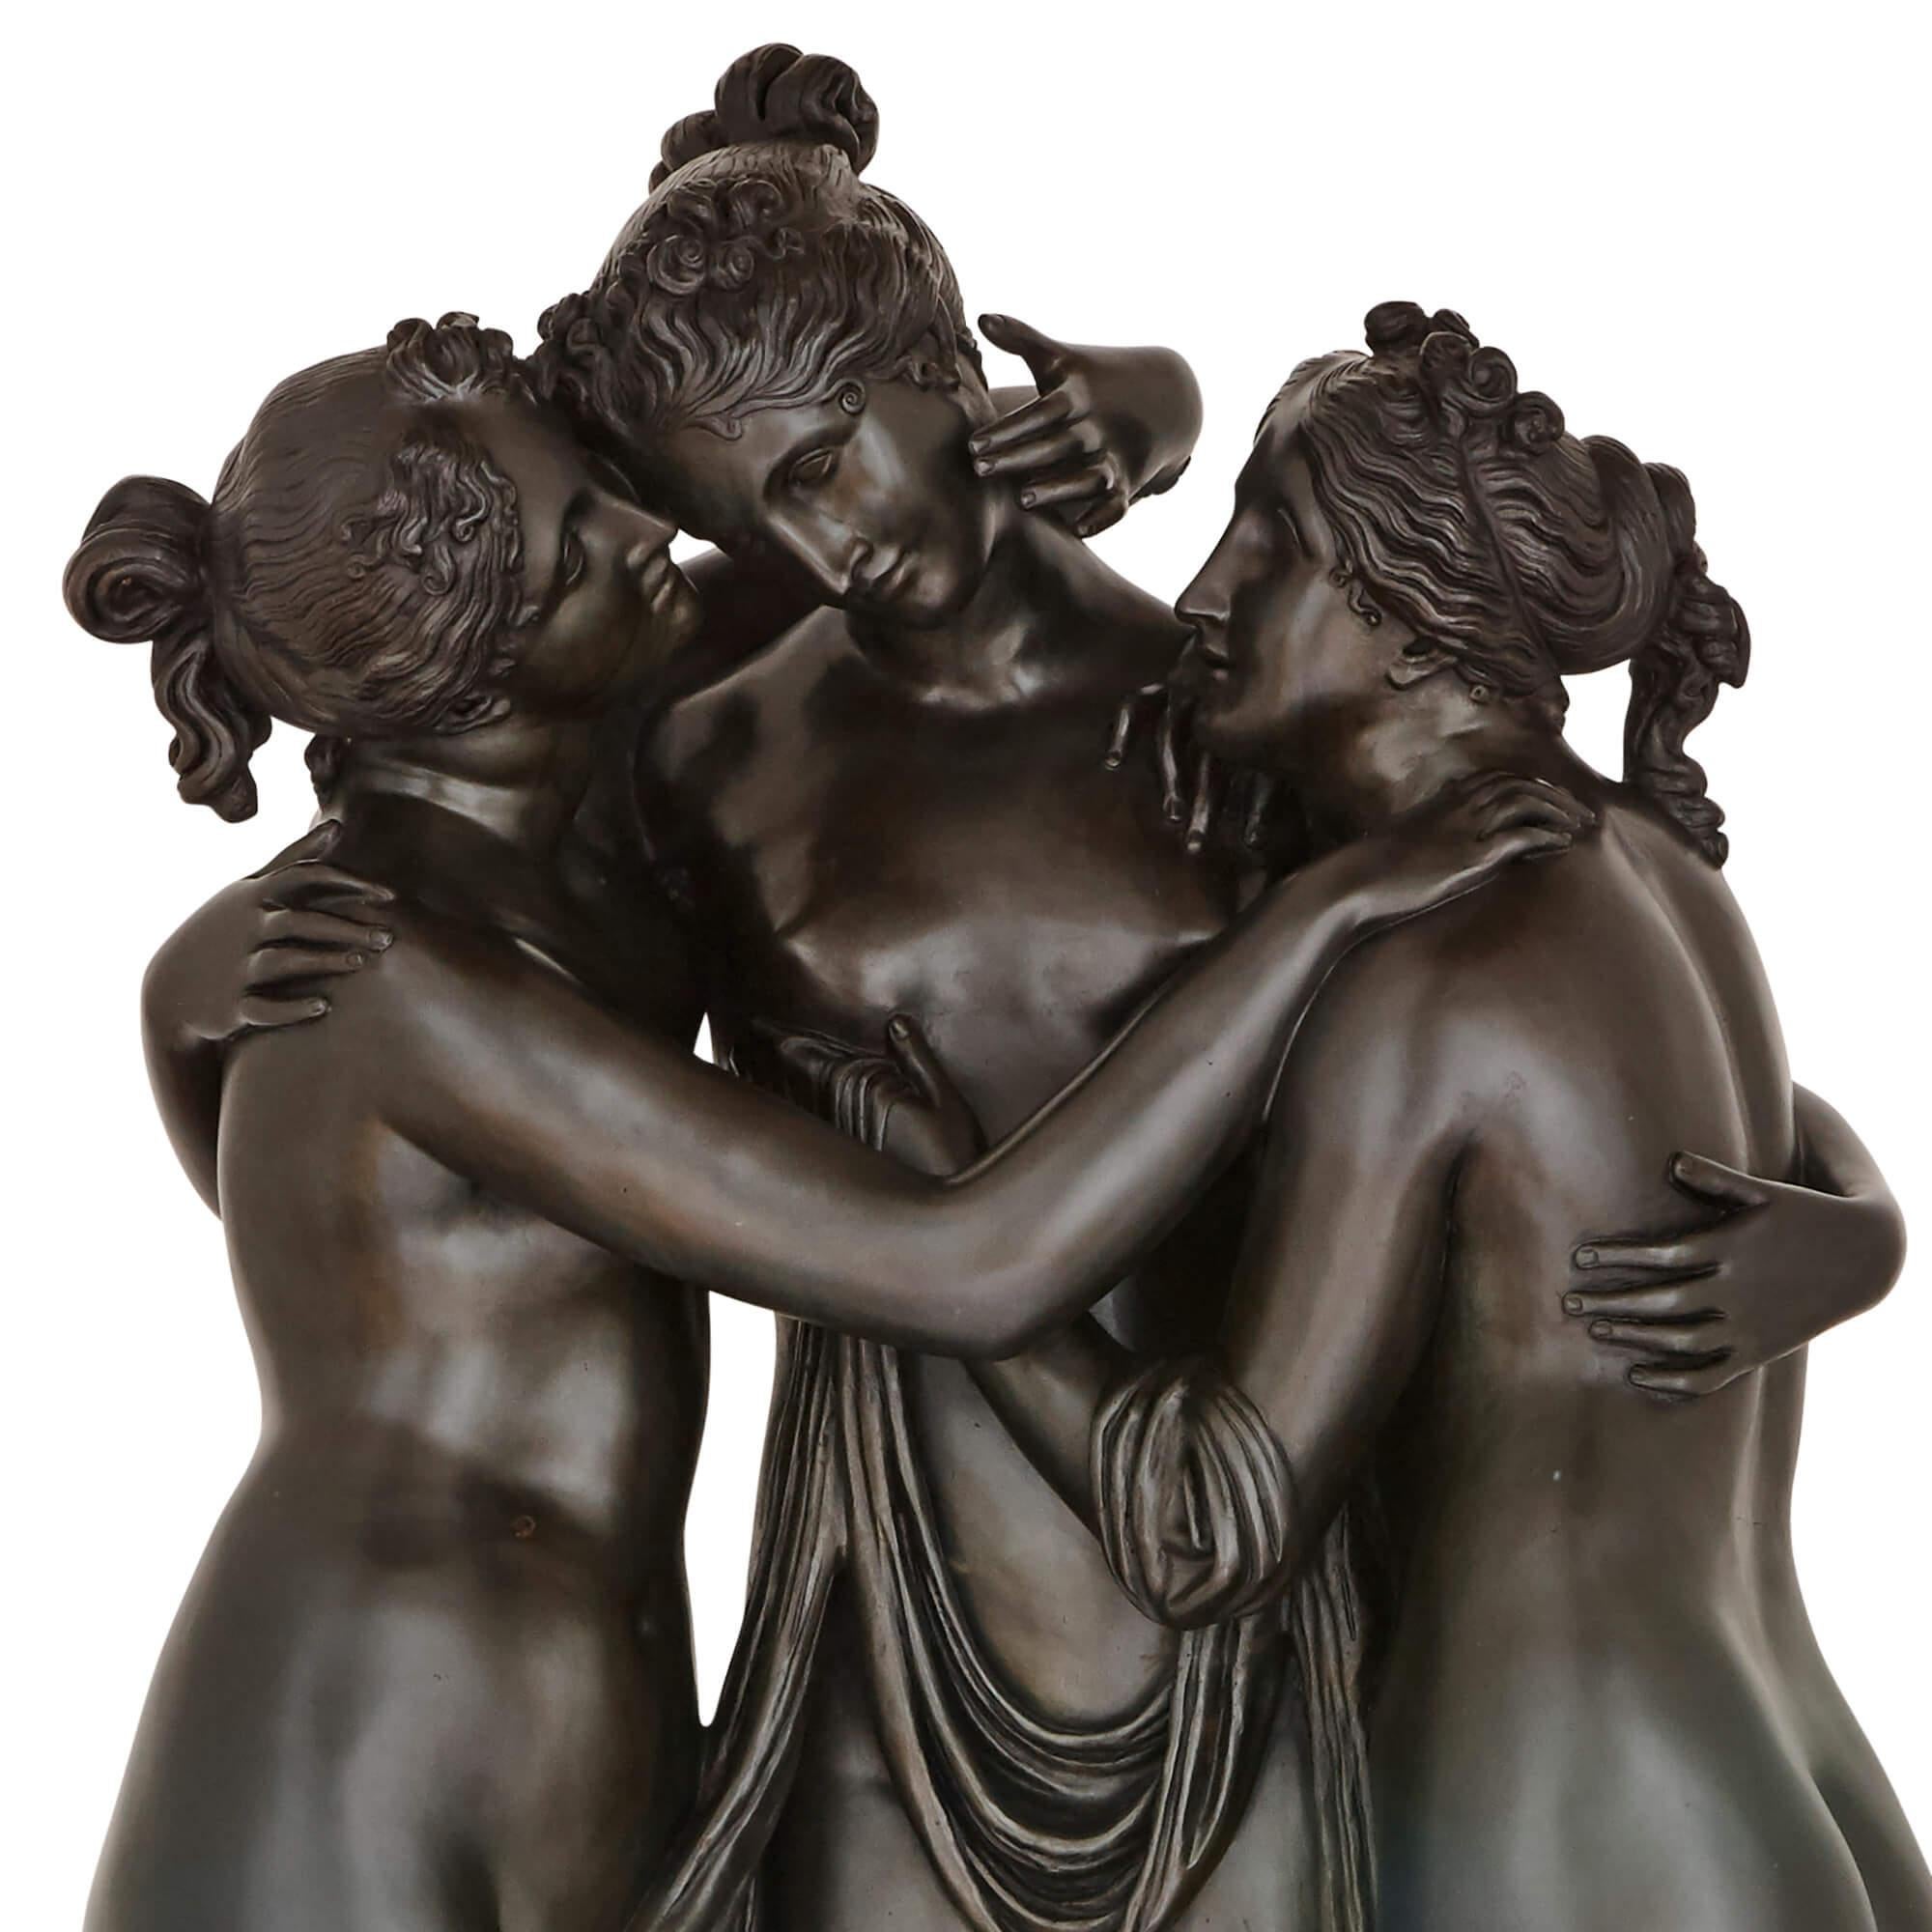 Antonio Canova (Italien, 1757-1822) est largement considéré comme l'un des maîtres de la sculpture néoclassique, et son groupe de marbre « Les Trois Grâces » est l'une de ses œuvres les plus appréciées. Cet exceptionnel groupe en bronze est une